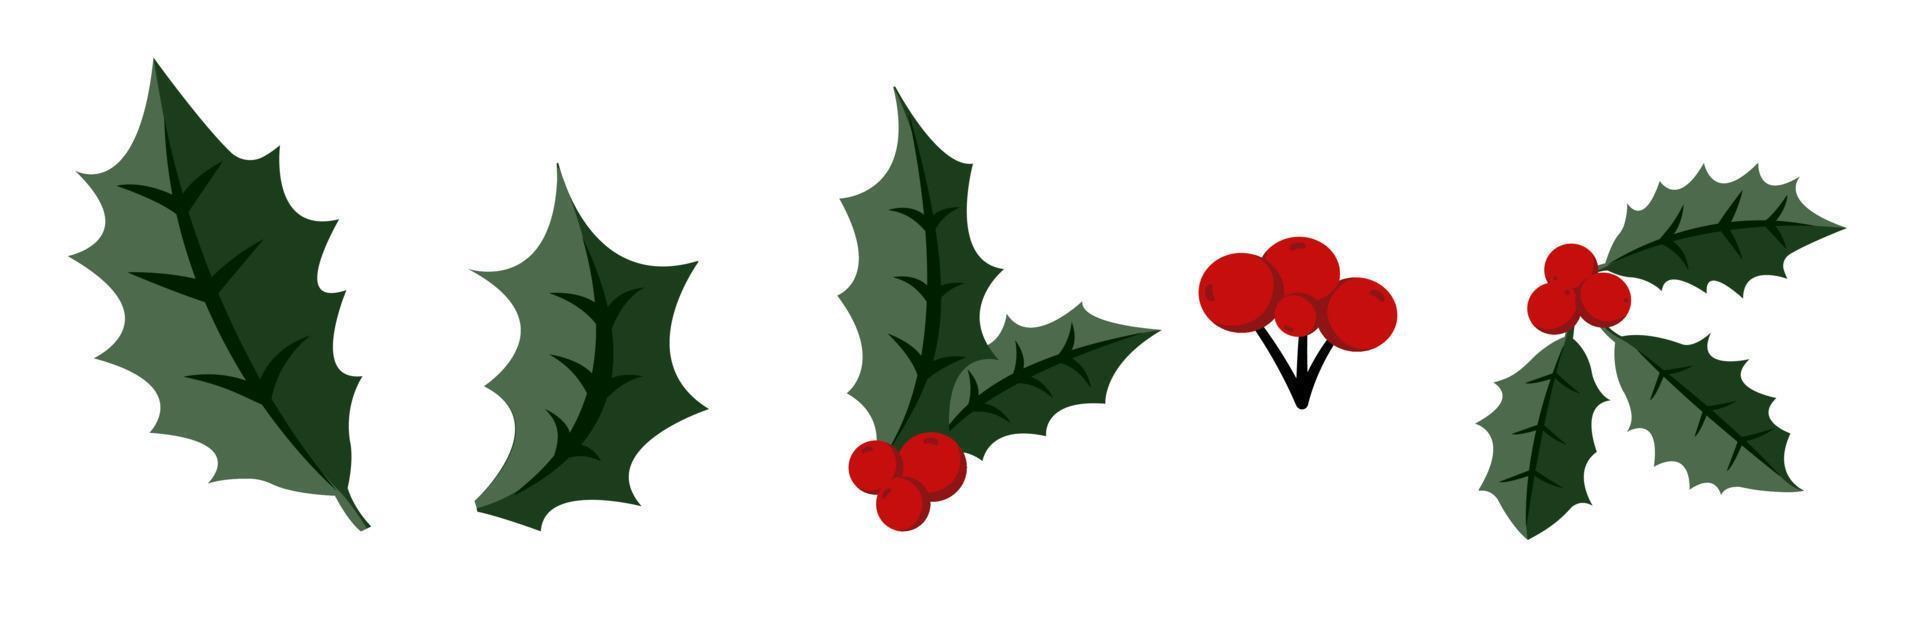 Kerstmis hulst specie takje met rood bessen en boom naald- Afdeling vector